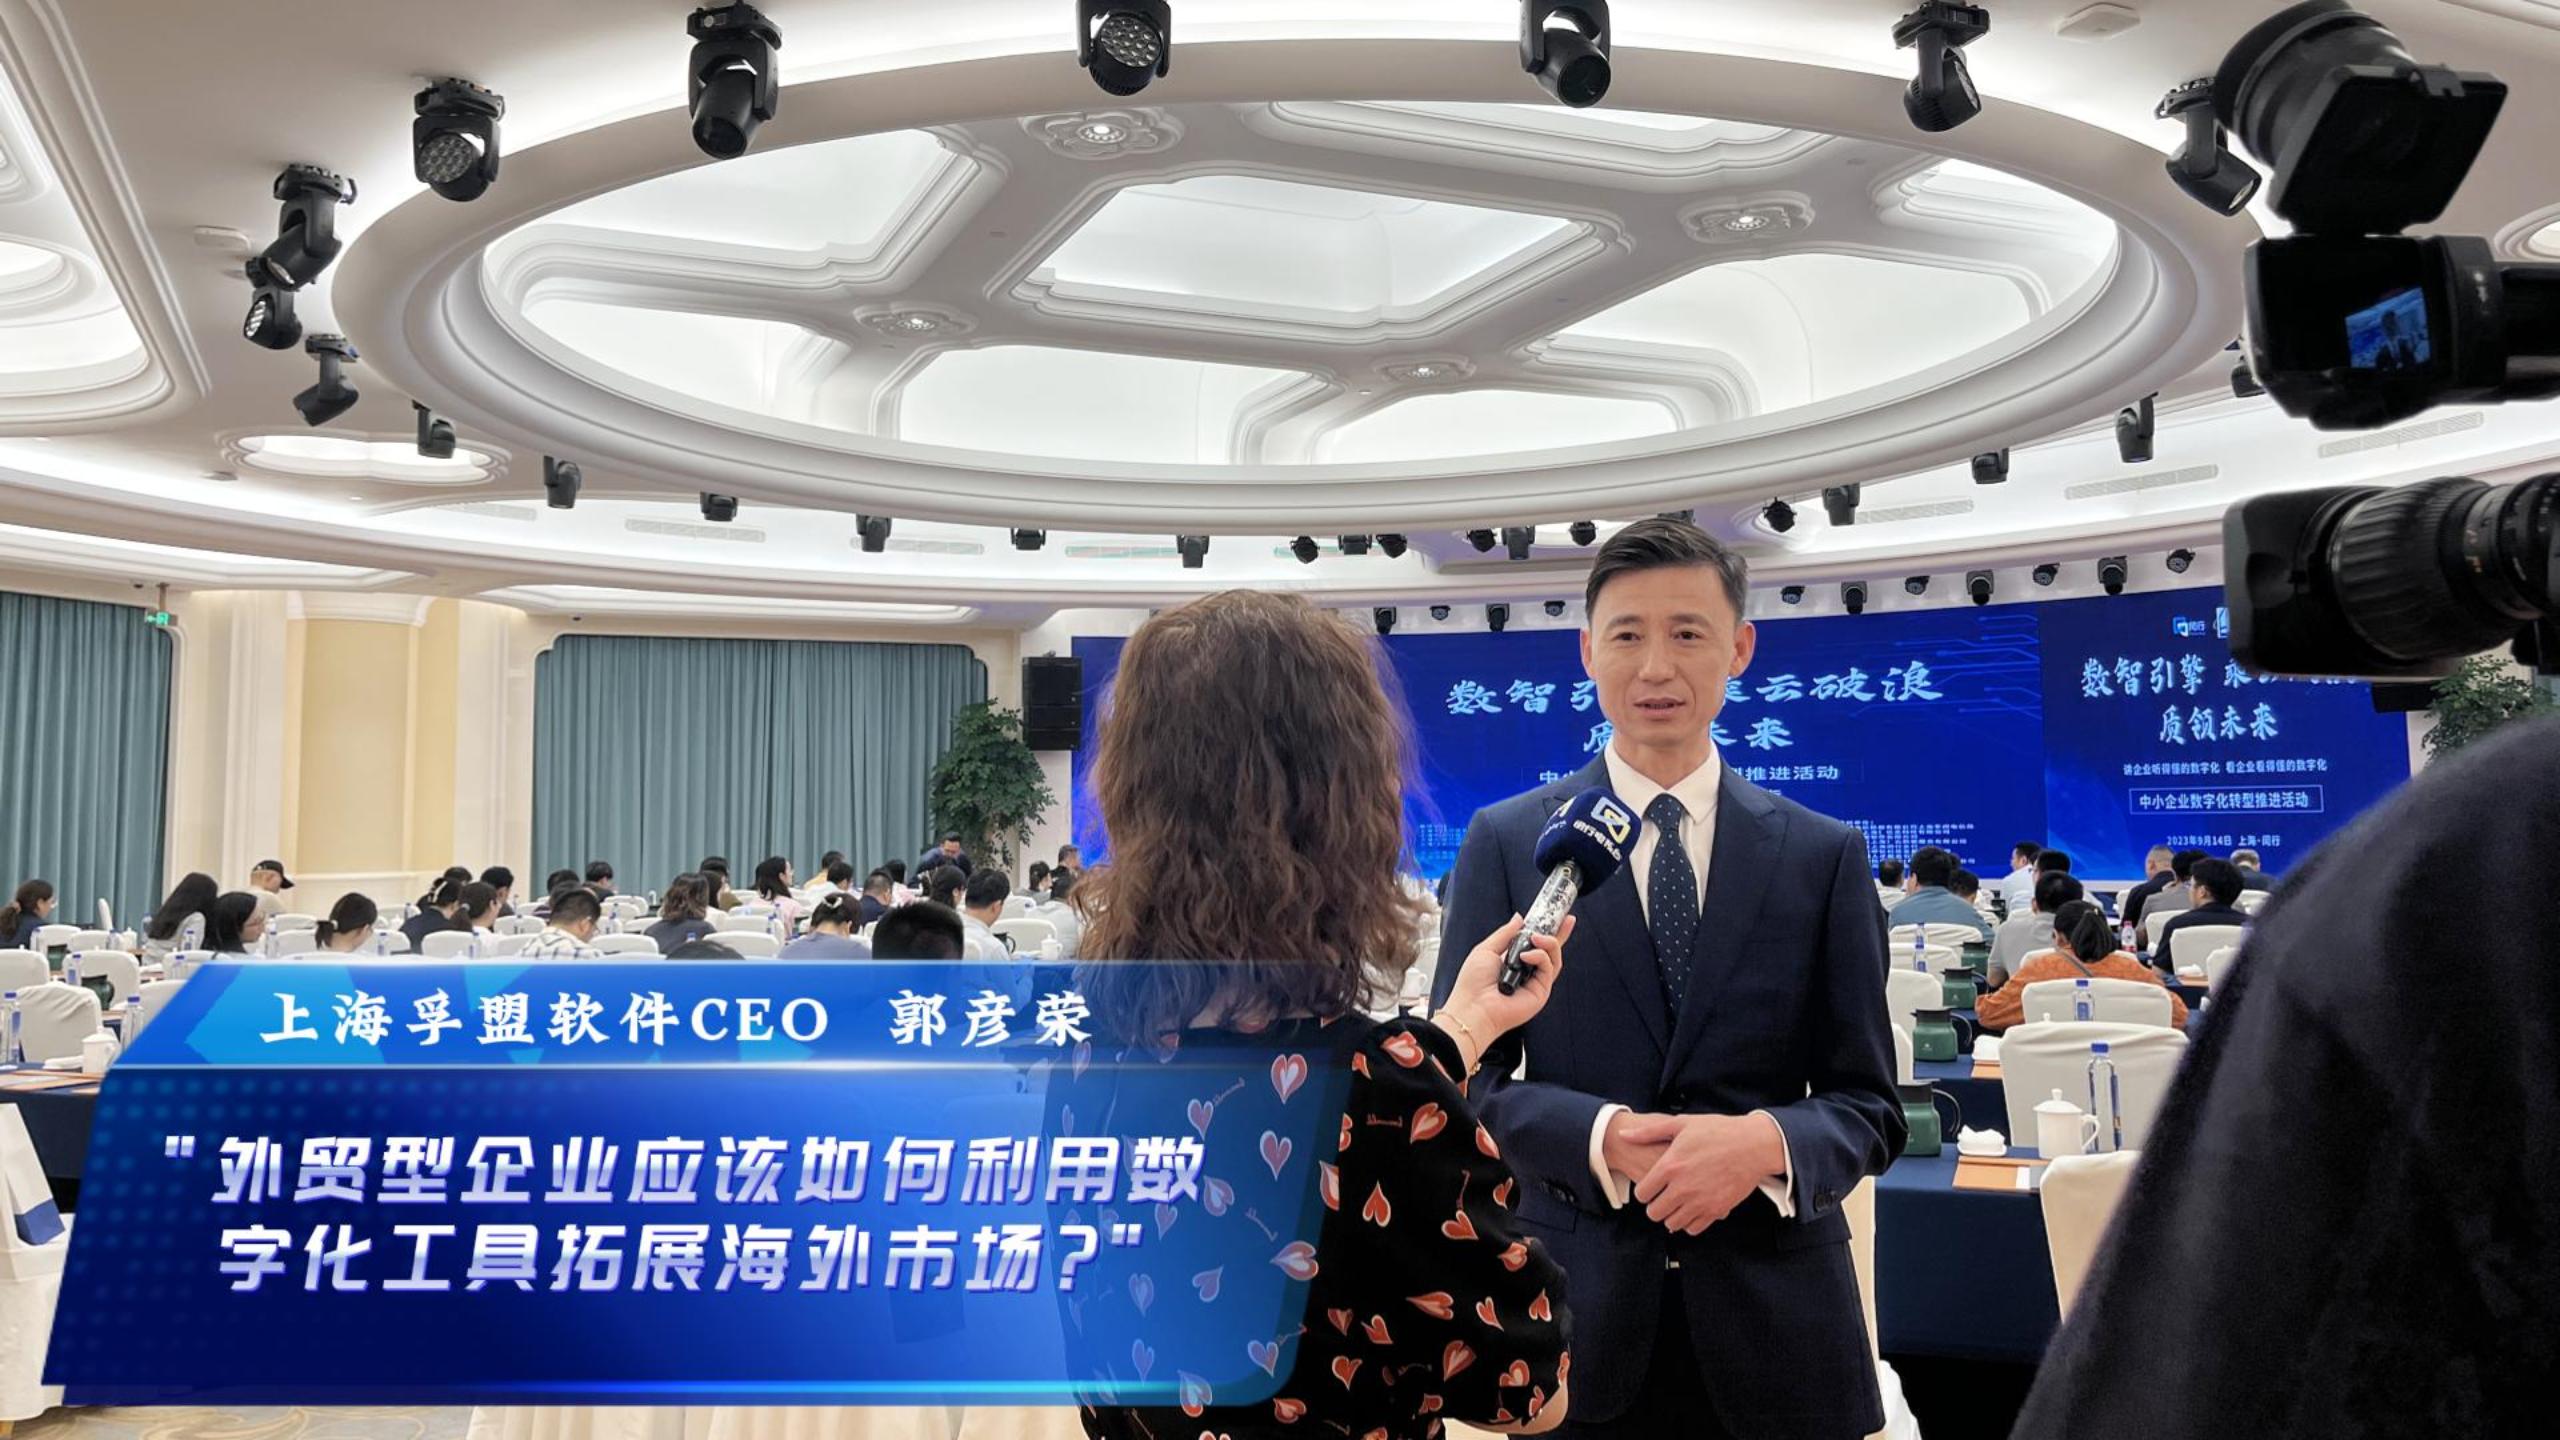 365Bet体育在线投注CEO郭彦荣接受上海闵行电视台采访，讲述“外贸型企业应该如何利用数字化工具拓展海外市场”